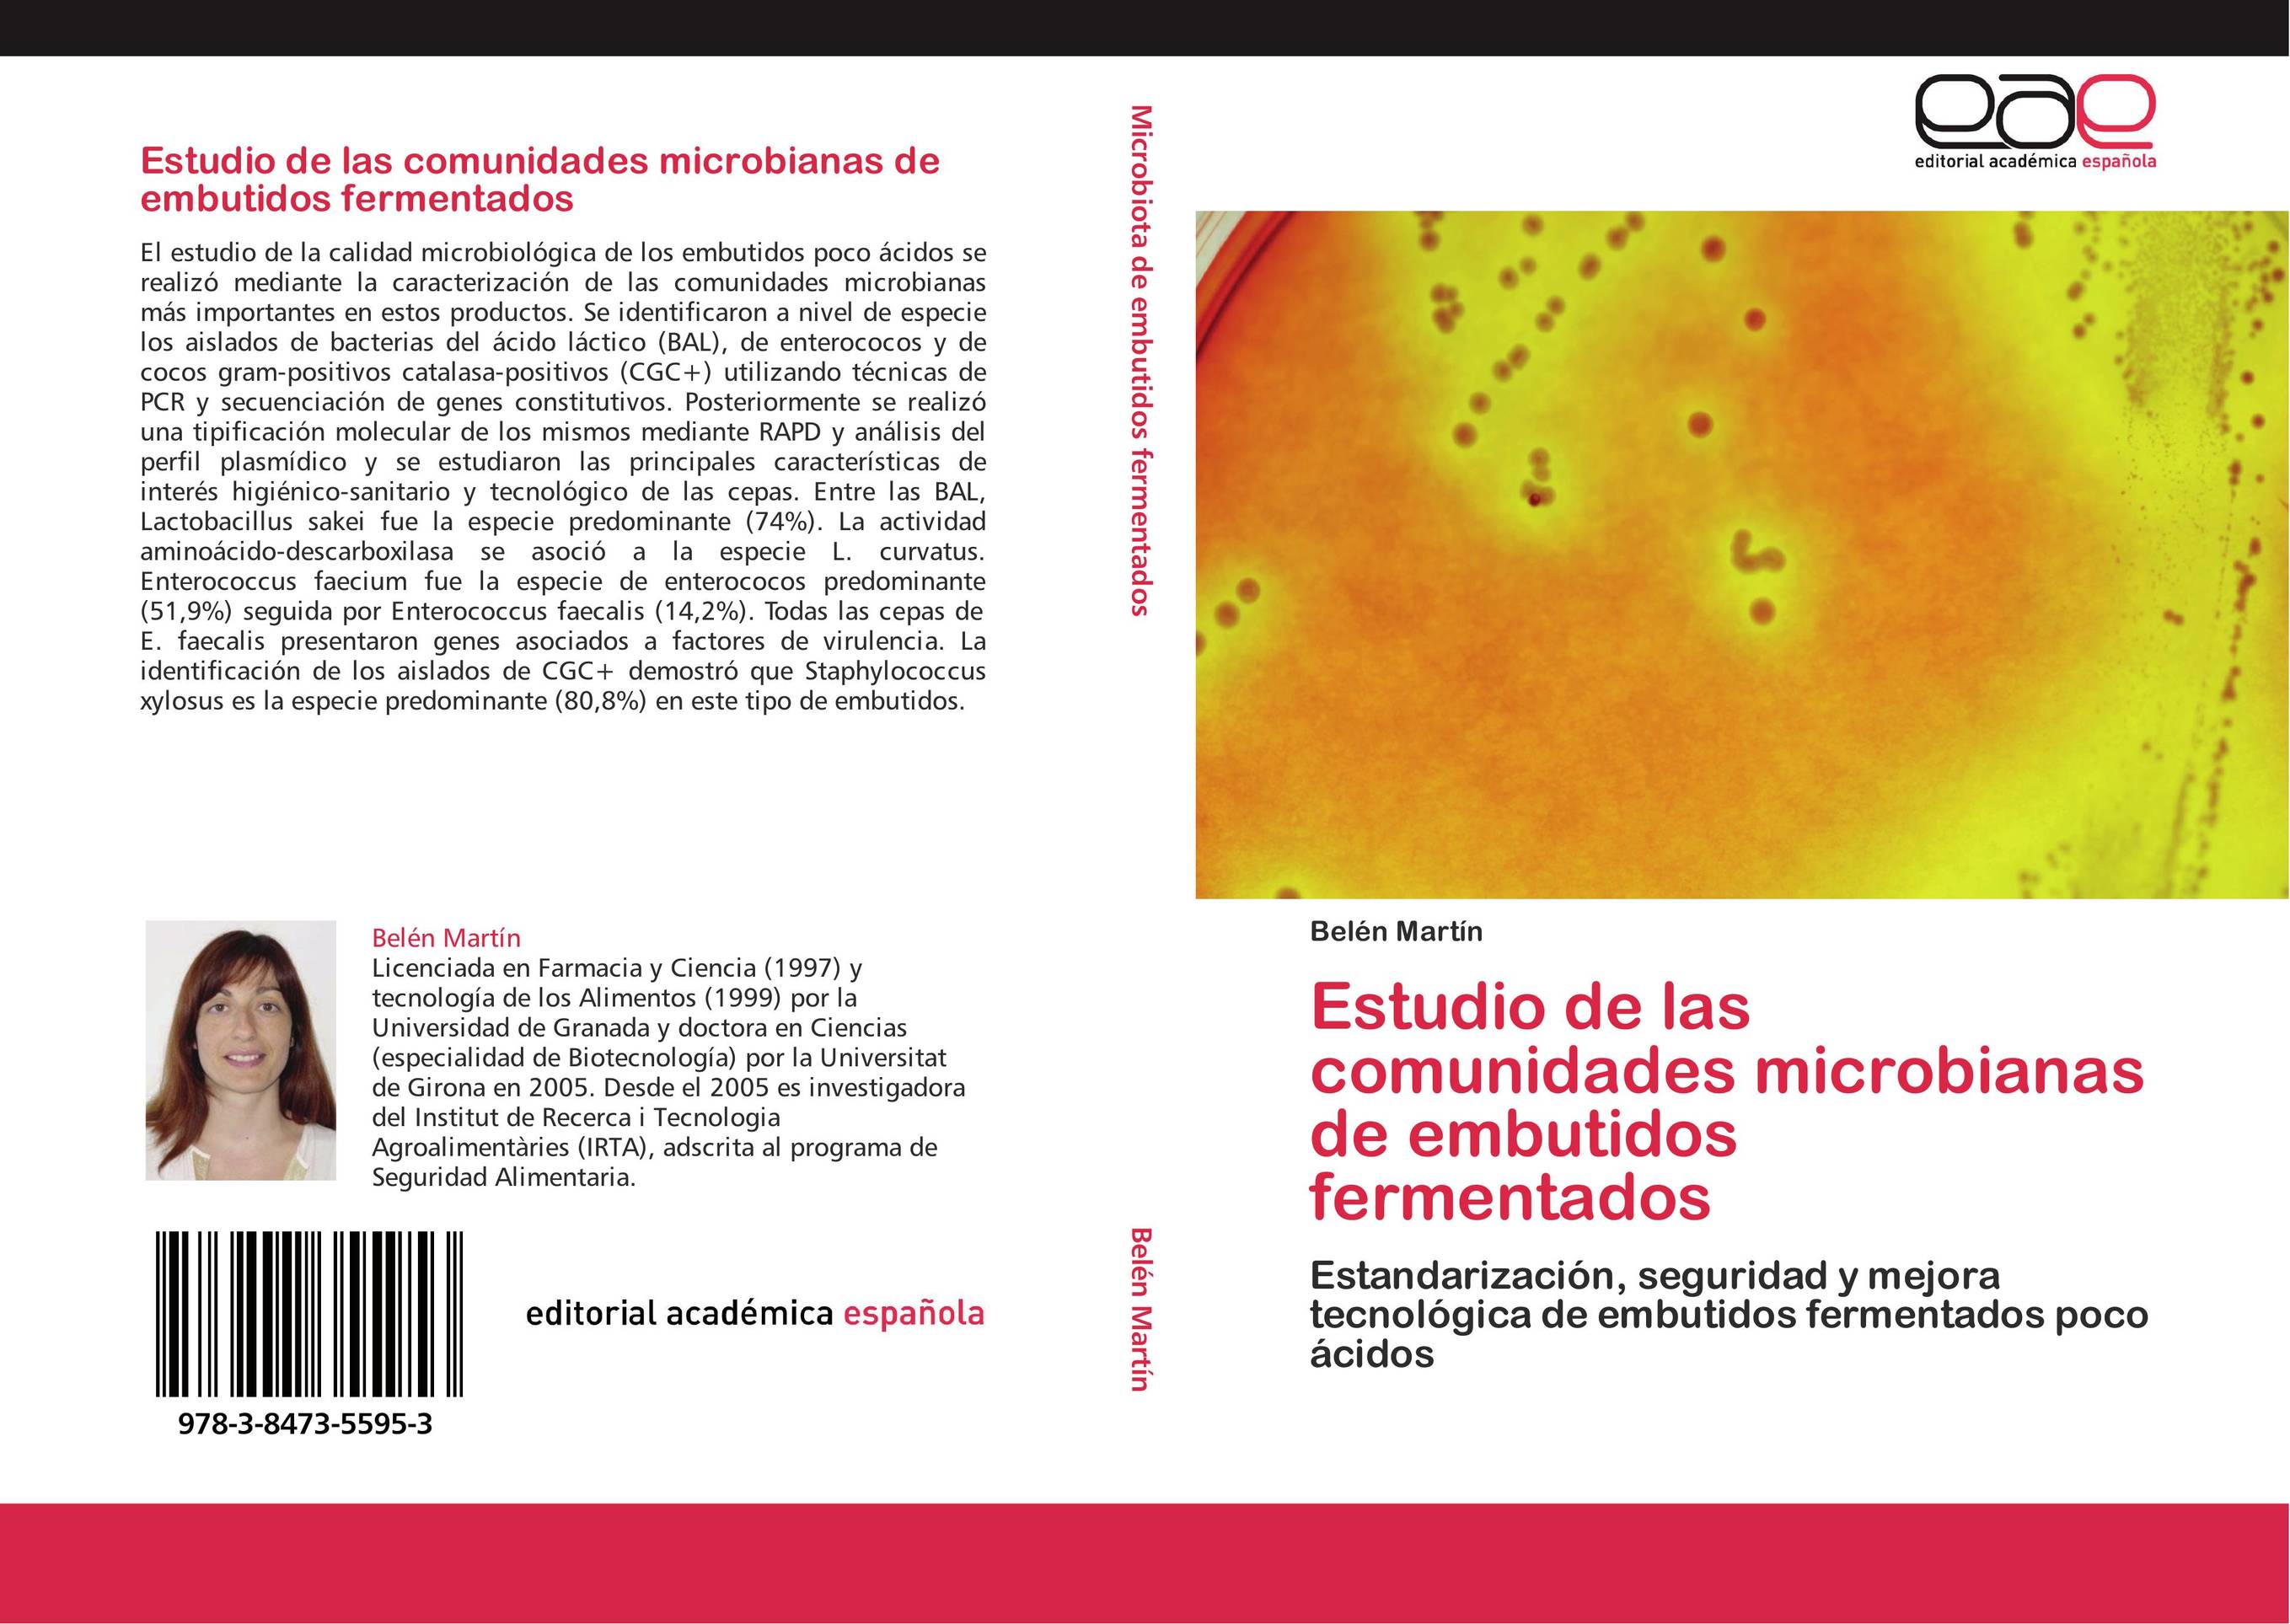 Estudio de las comunidades microbianas de embutidos fermentados